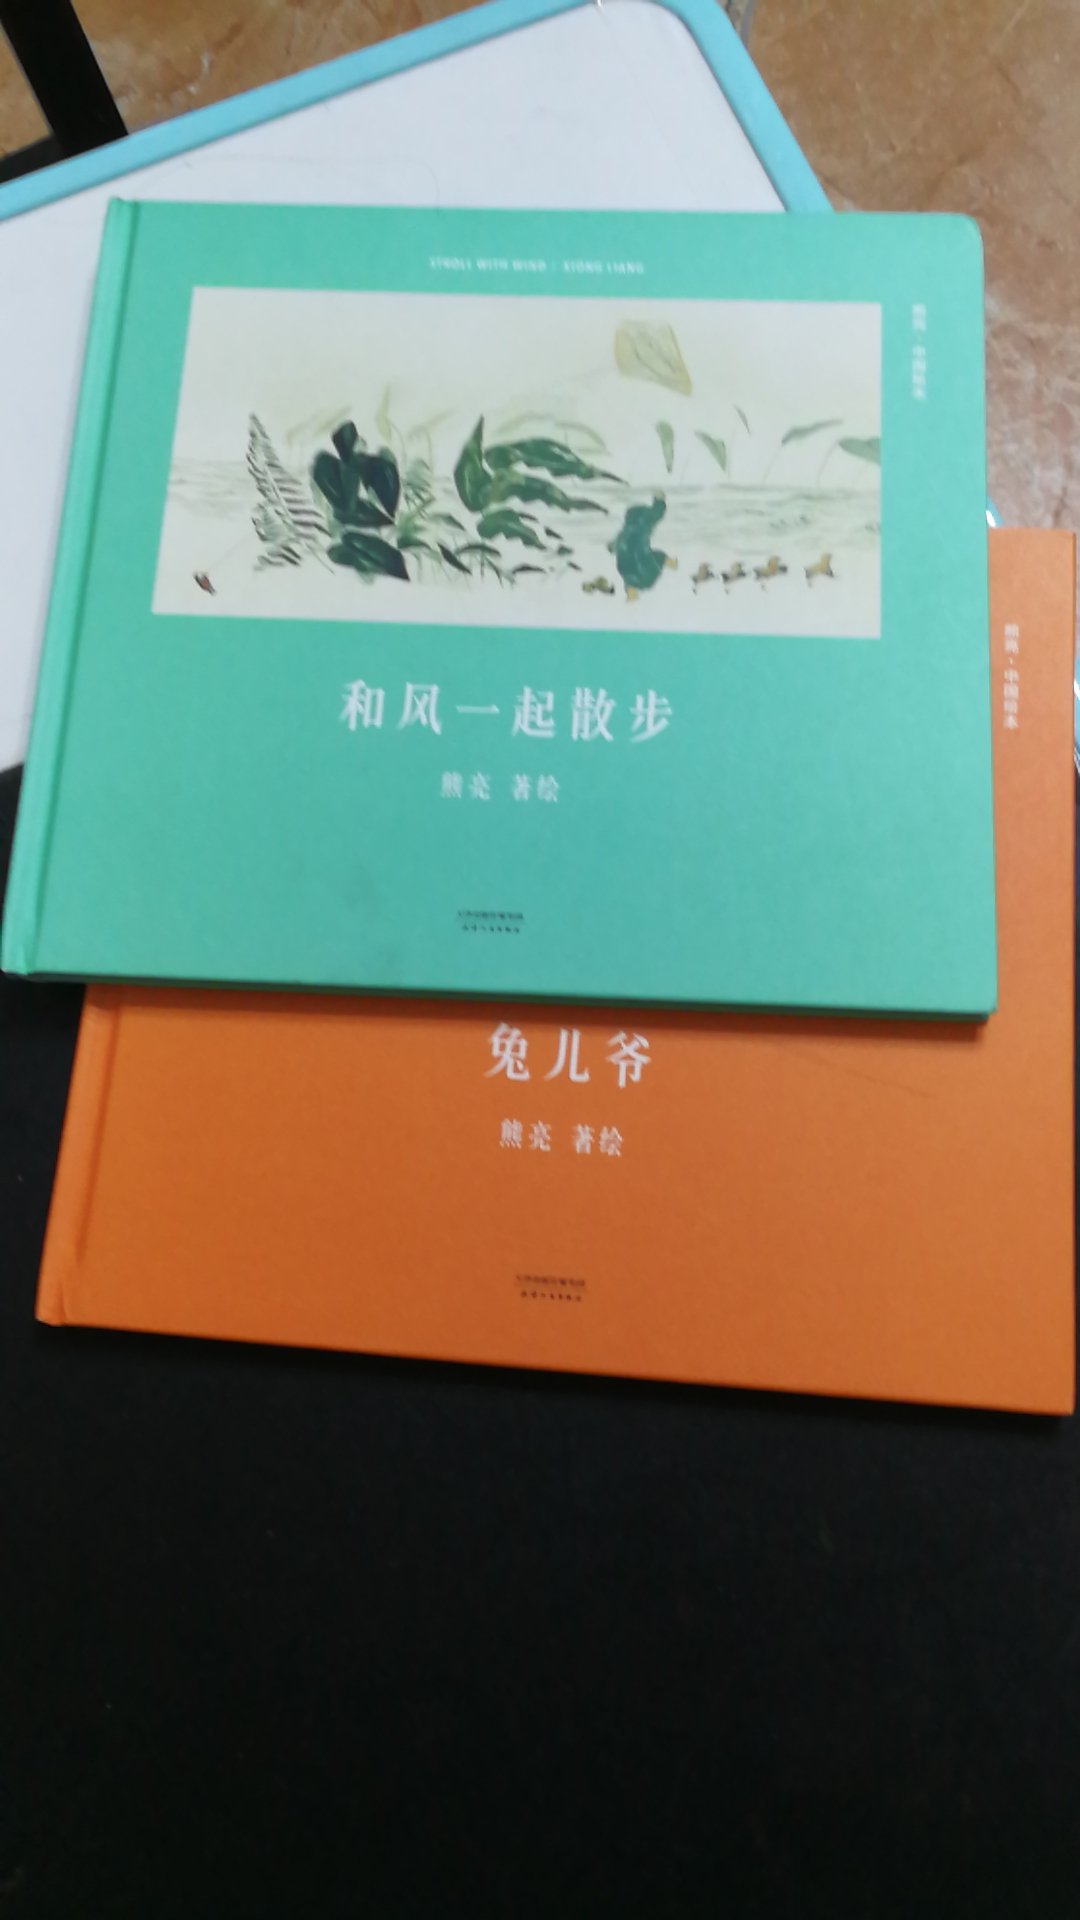 书的质量很好，内容也很有趣，画风偏中国油墨画